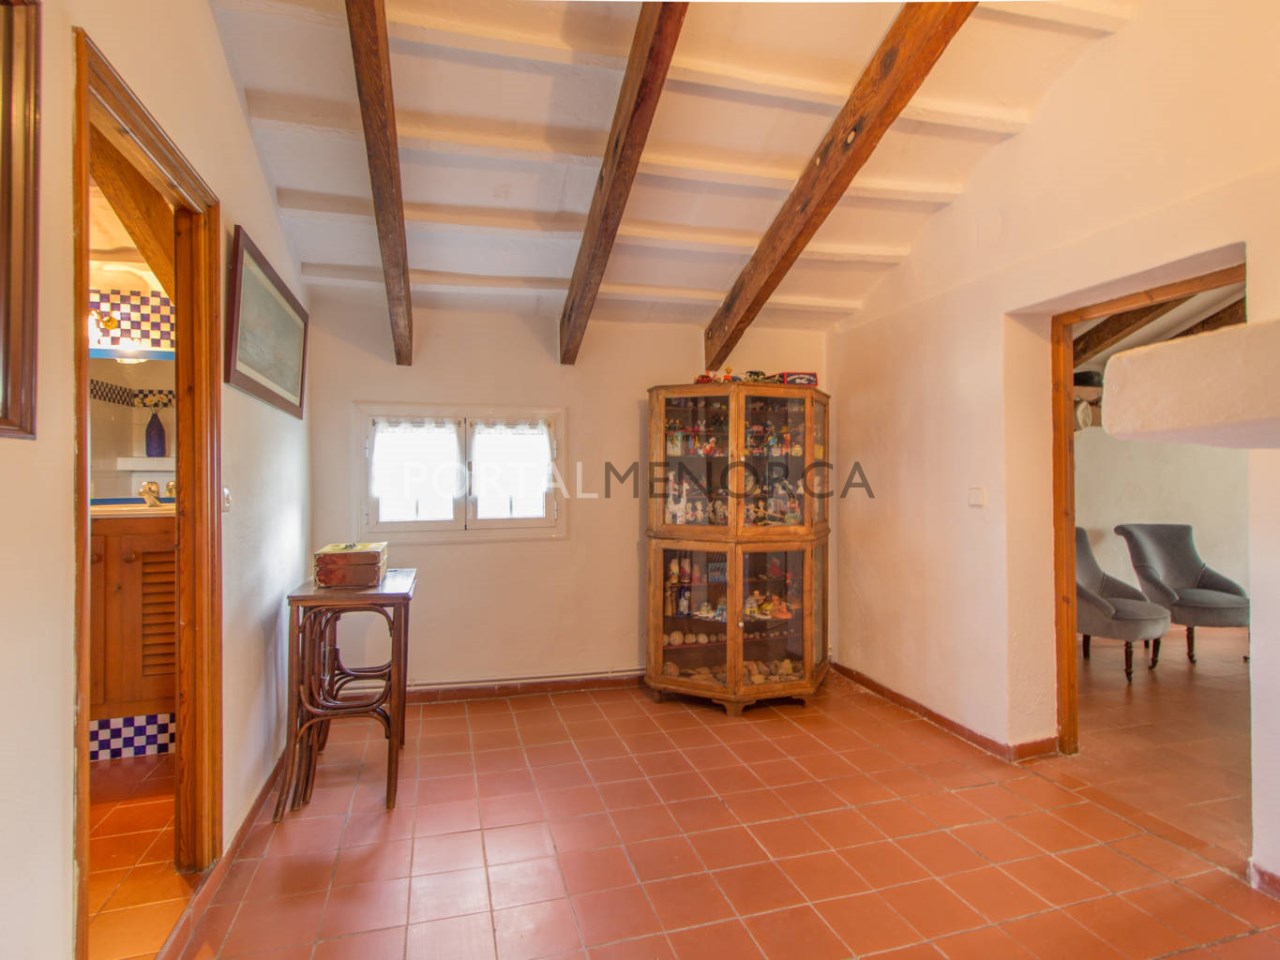 Casa de campo en venta en Menorca - Planta primera (5)